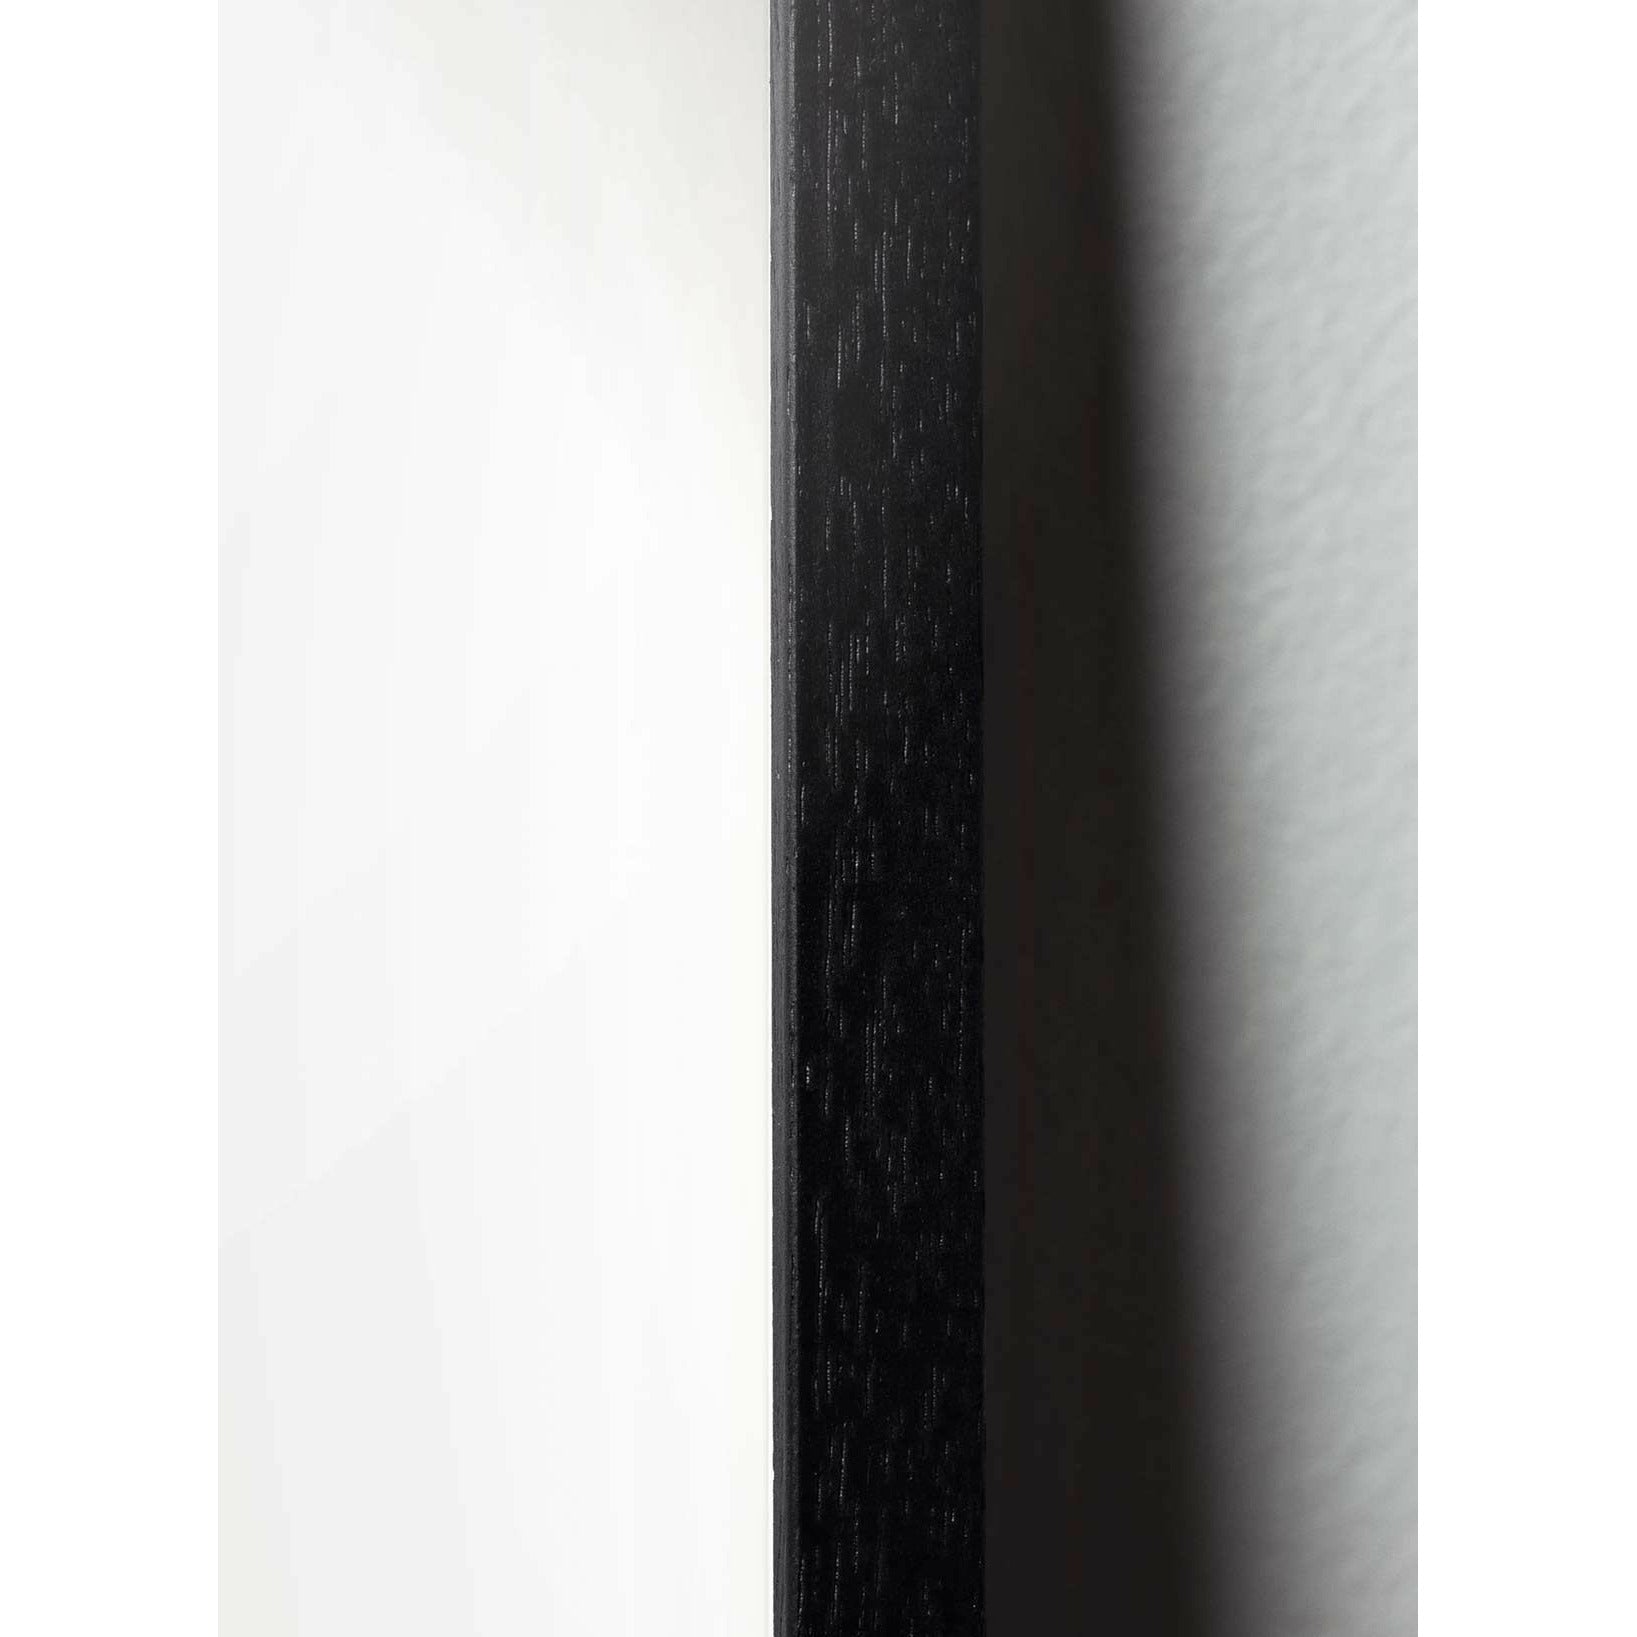 Pomysły plakat linii stożkowej, rama w czarnym lakierowanym drewnie 70x100 cm, białe tło